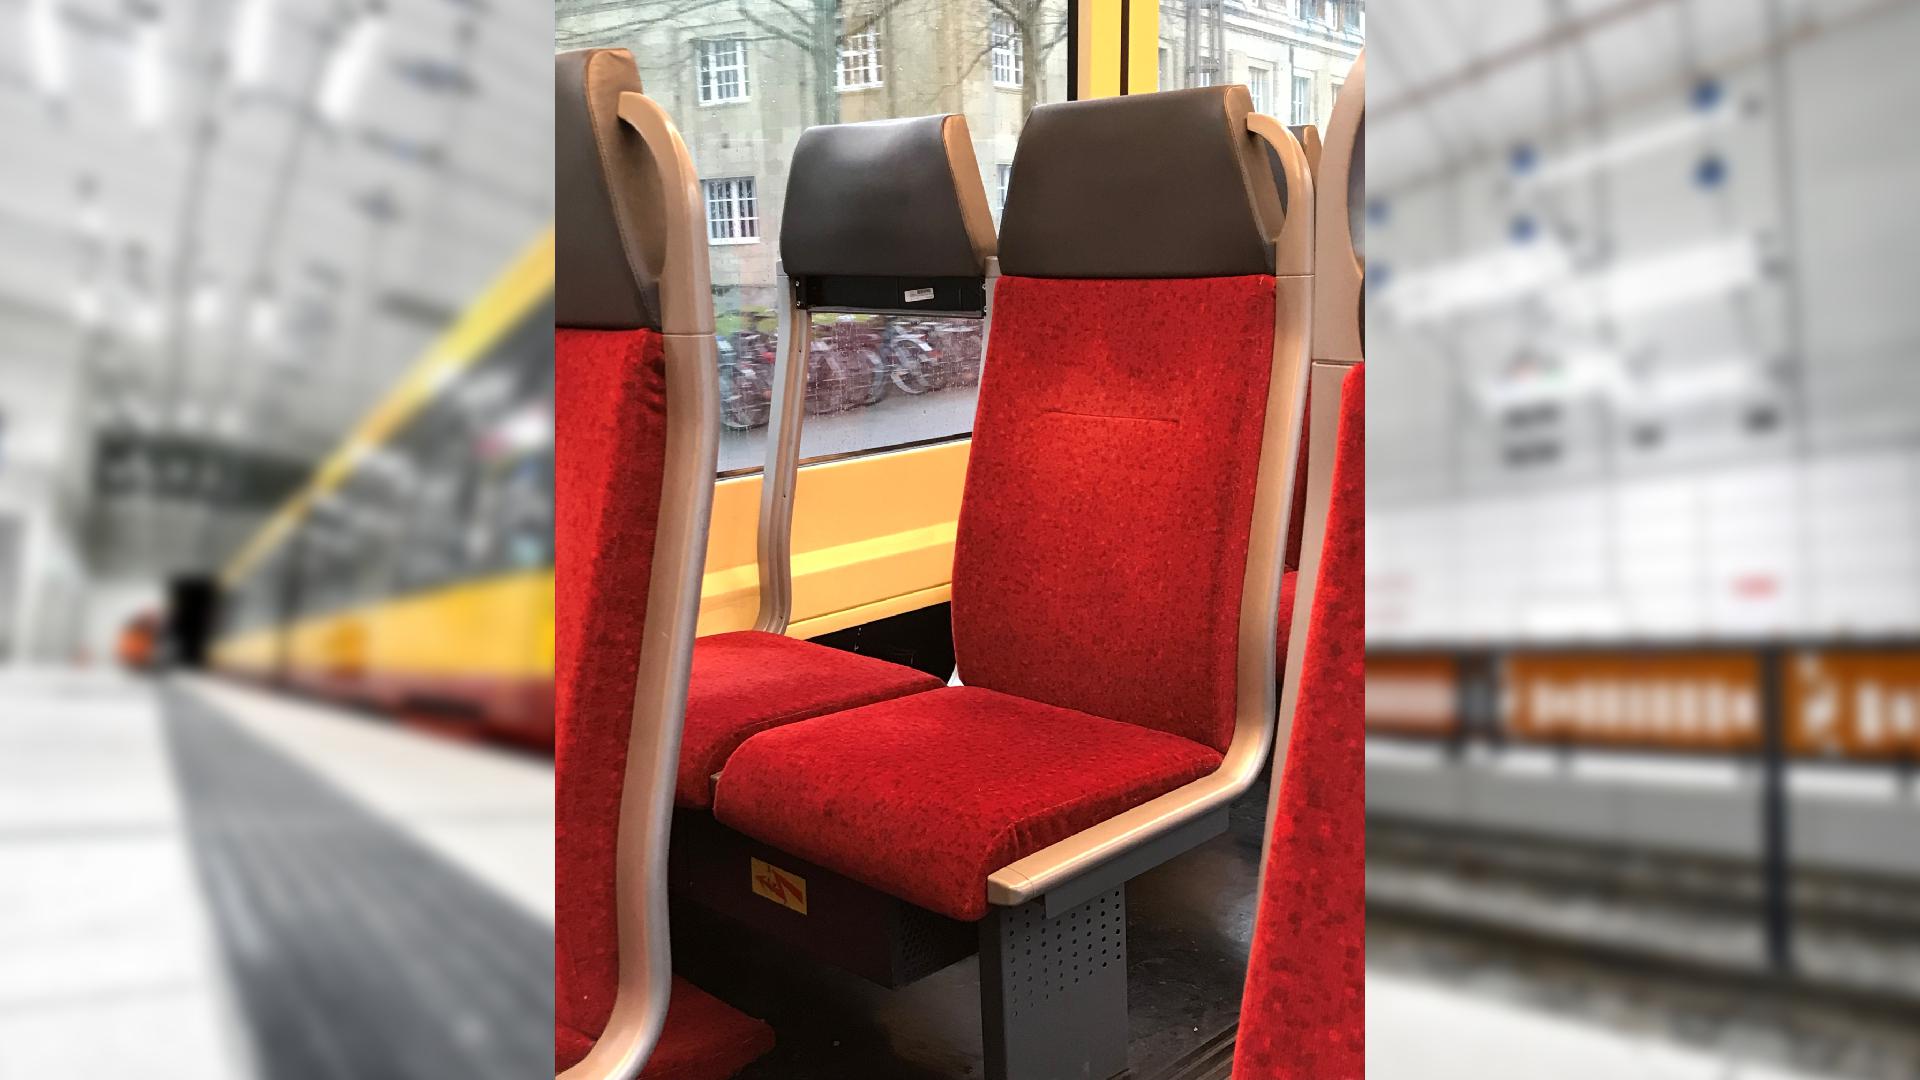 Abmontiert: Sitz ohne Rückenlehne in einer Karlsruher Stadtbahn.